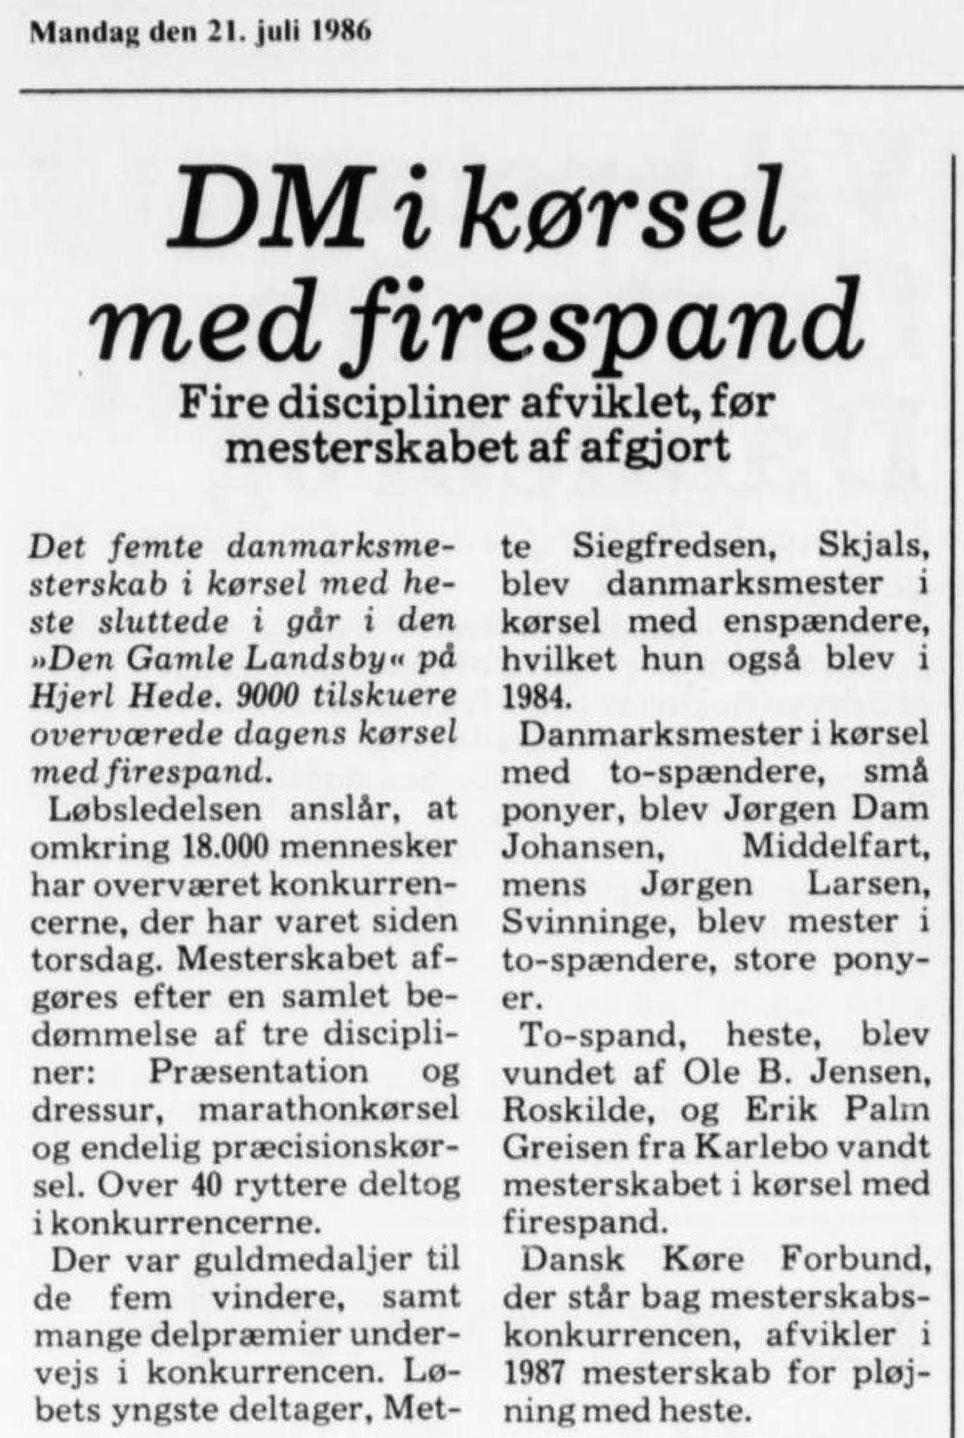 Omtale af DM og danmarksmestre på Hjerl Hede i 1986. Skagens Avis, 21. juli 1986, s. 5.